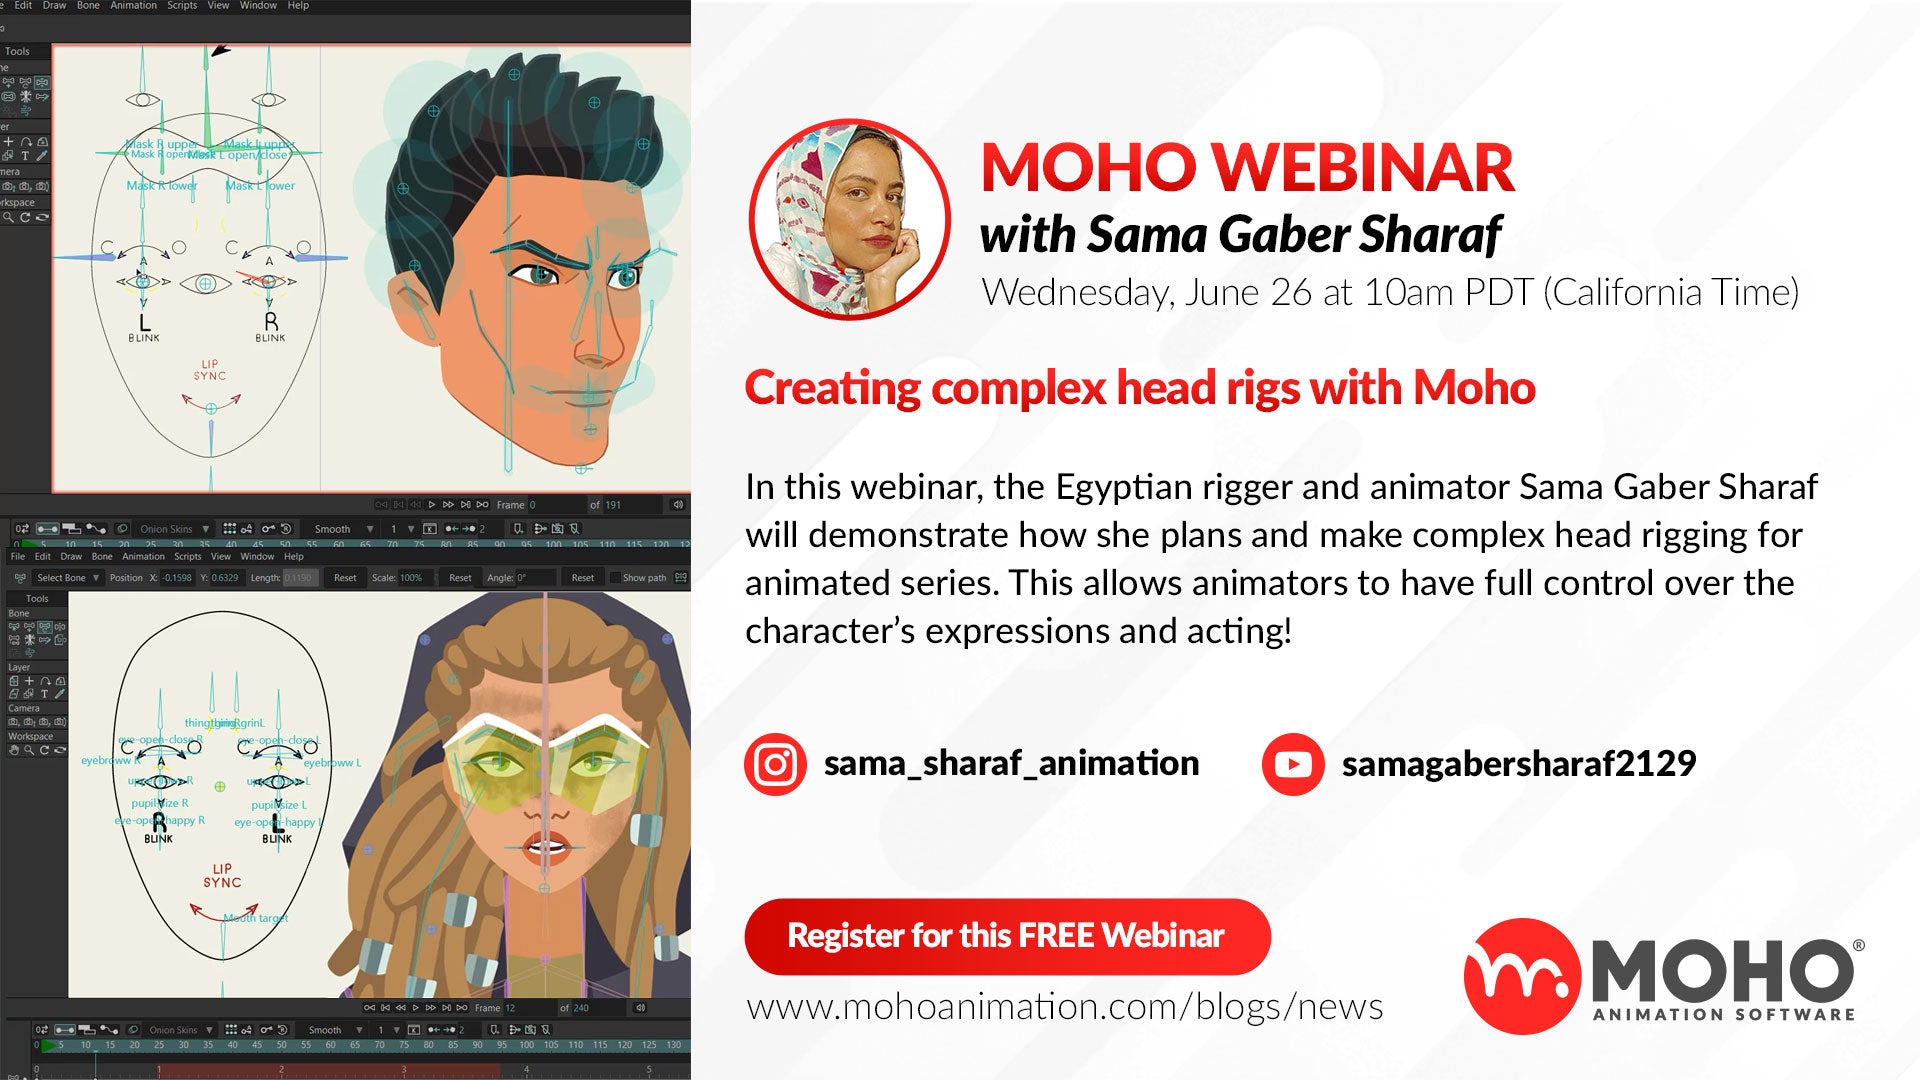 WEBINAR - Creating complex head rigs with Moho by Sama Gaber Sharaf